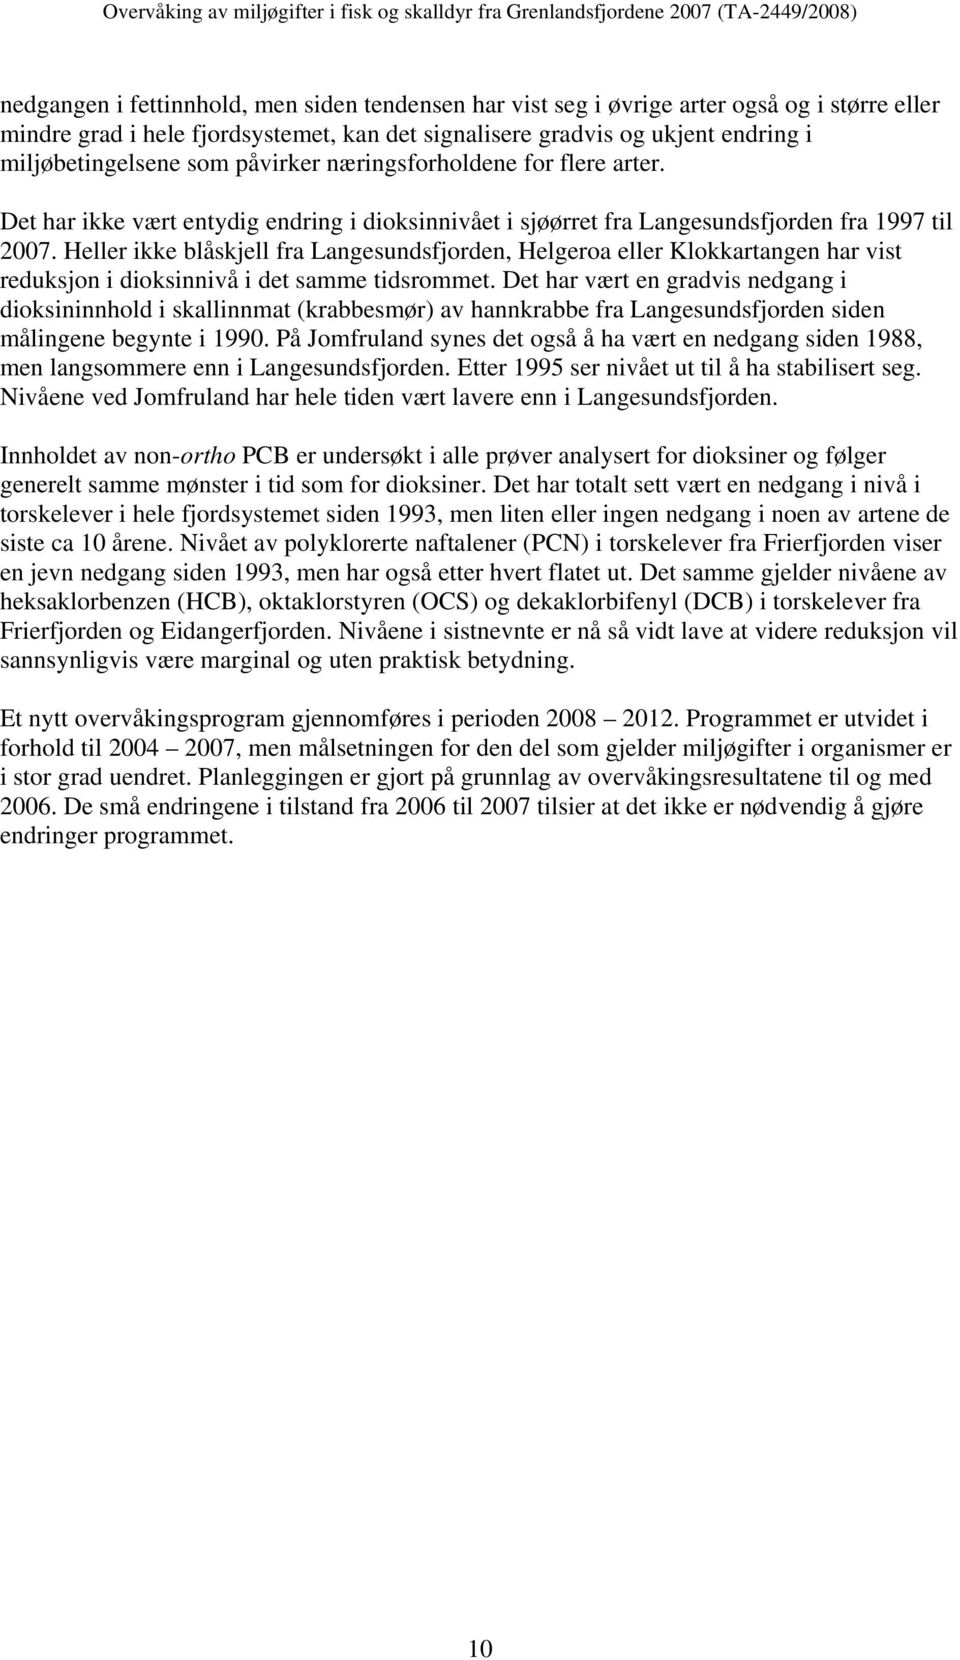 Heller ikke blåskjell fra Langesundsfjorden, Helgeroa eller Klokkartangen har vist reduksjon i dioksinnivå i det samme tidsrommet.